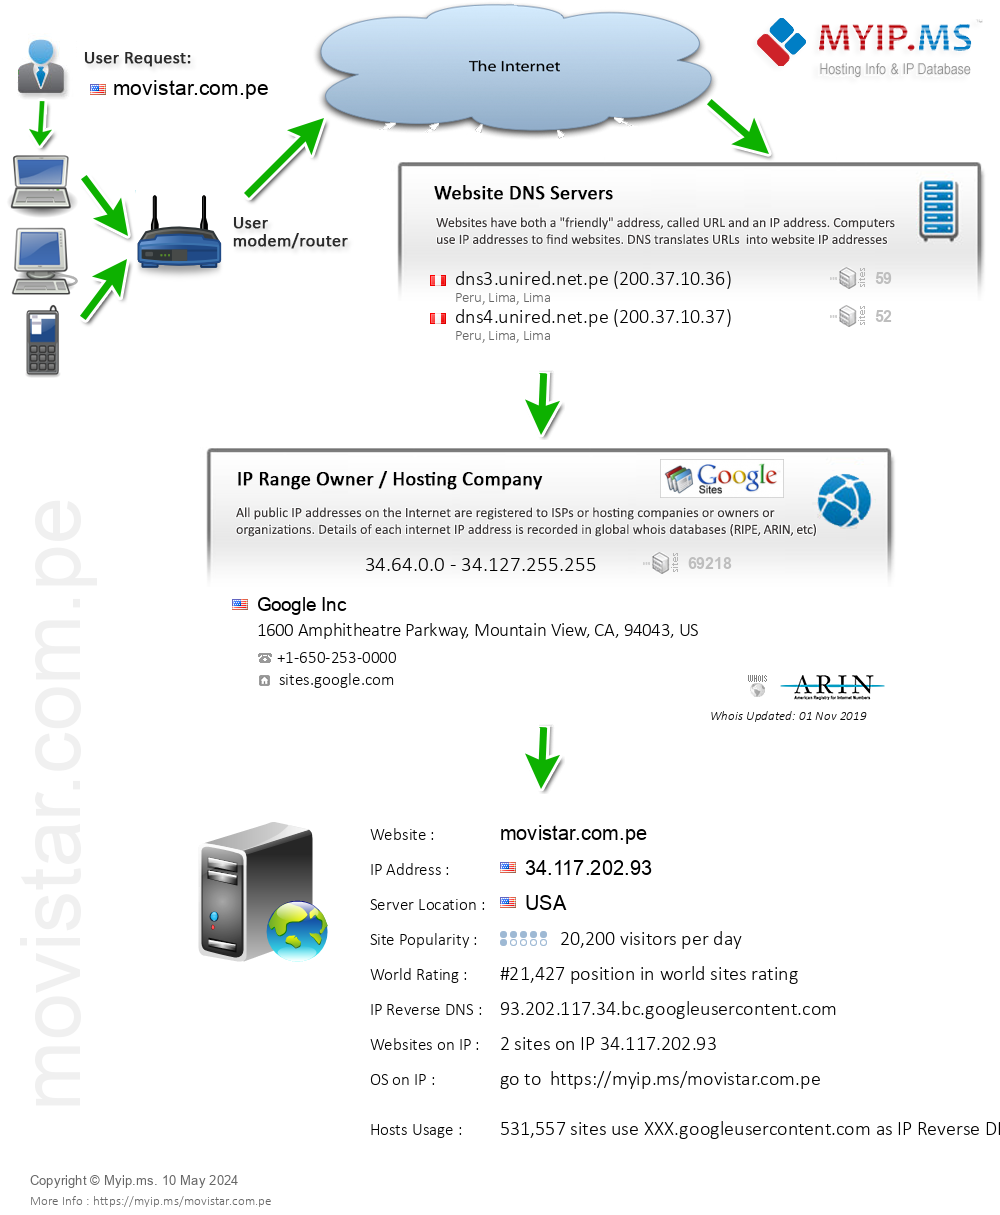 Movistar.com.pe - Website Hosting Visual IP Diagram